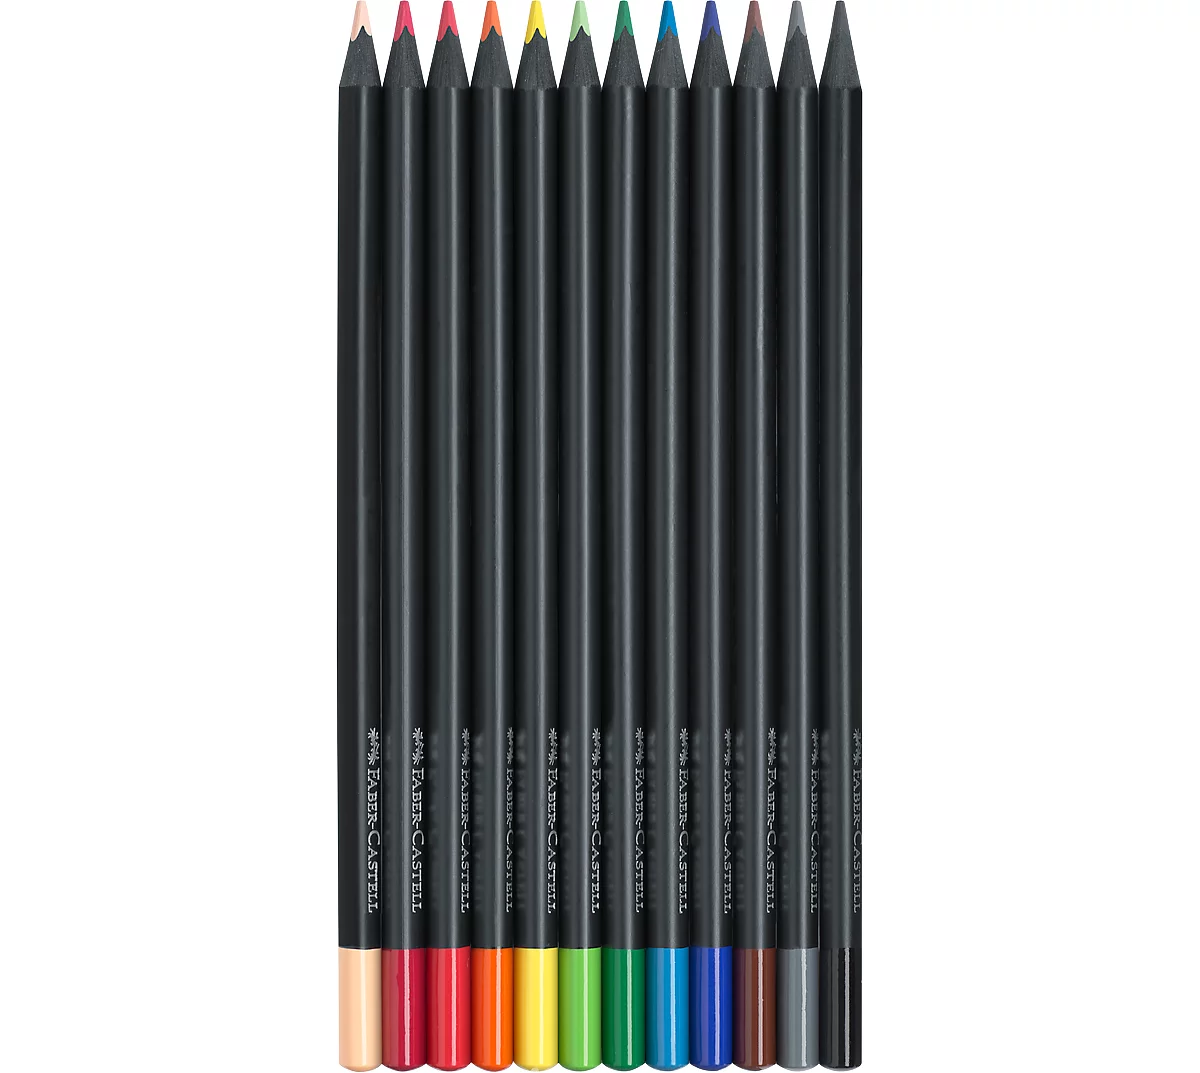 FABER-CASTELL Crayons de couleur Jumbo triangulaire, 10 étui